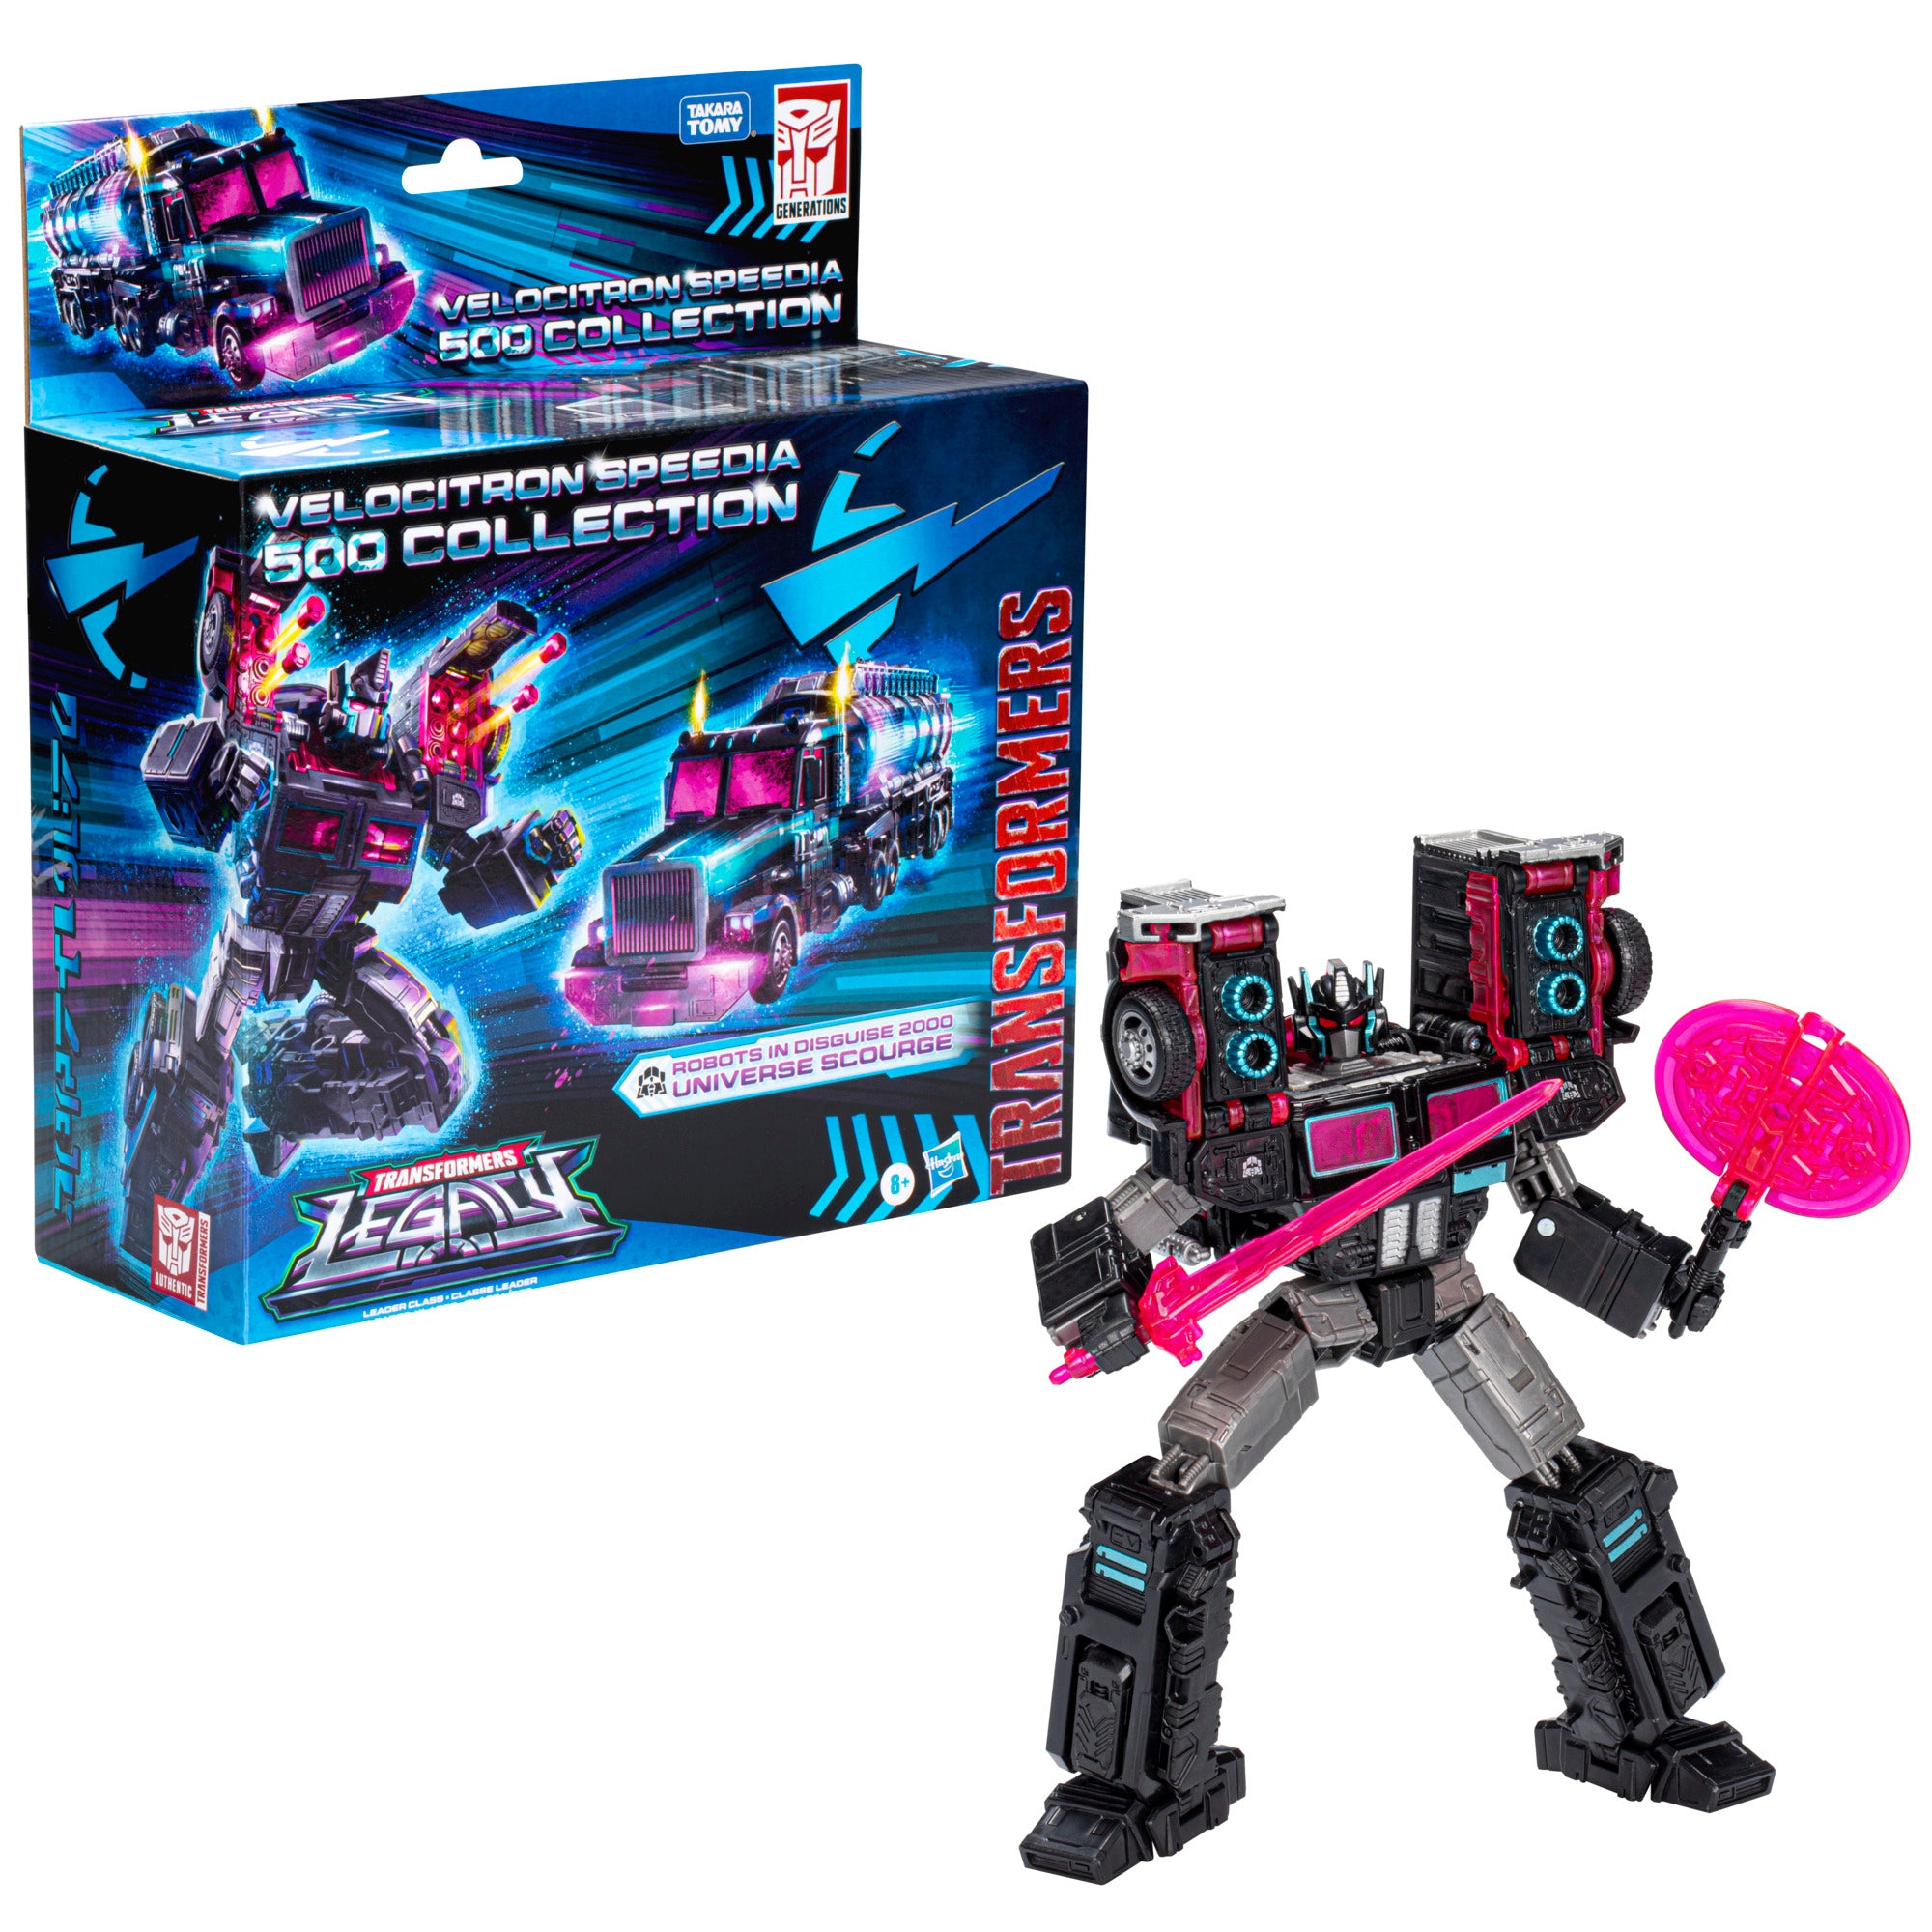 即納お得 Transformers in Disguise Skydive Action Figure (Hasbro